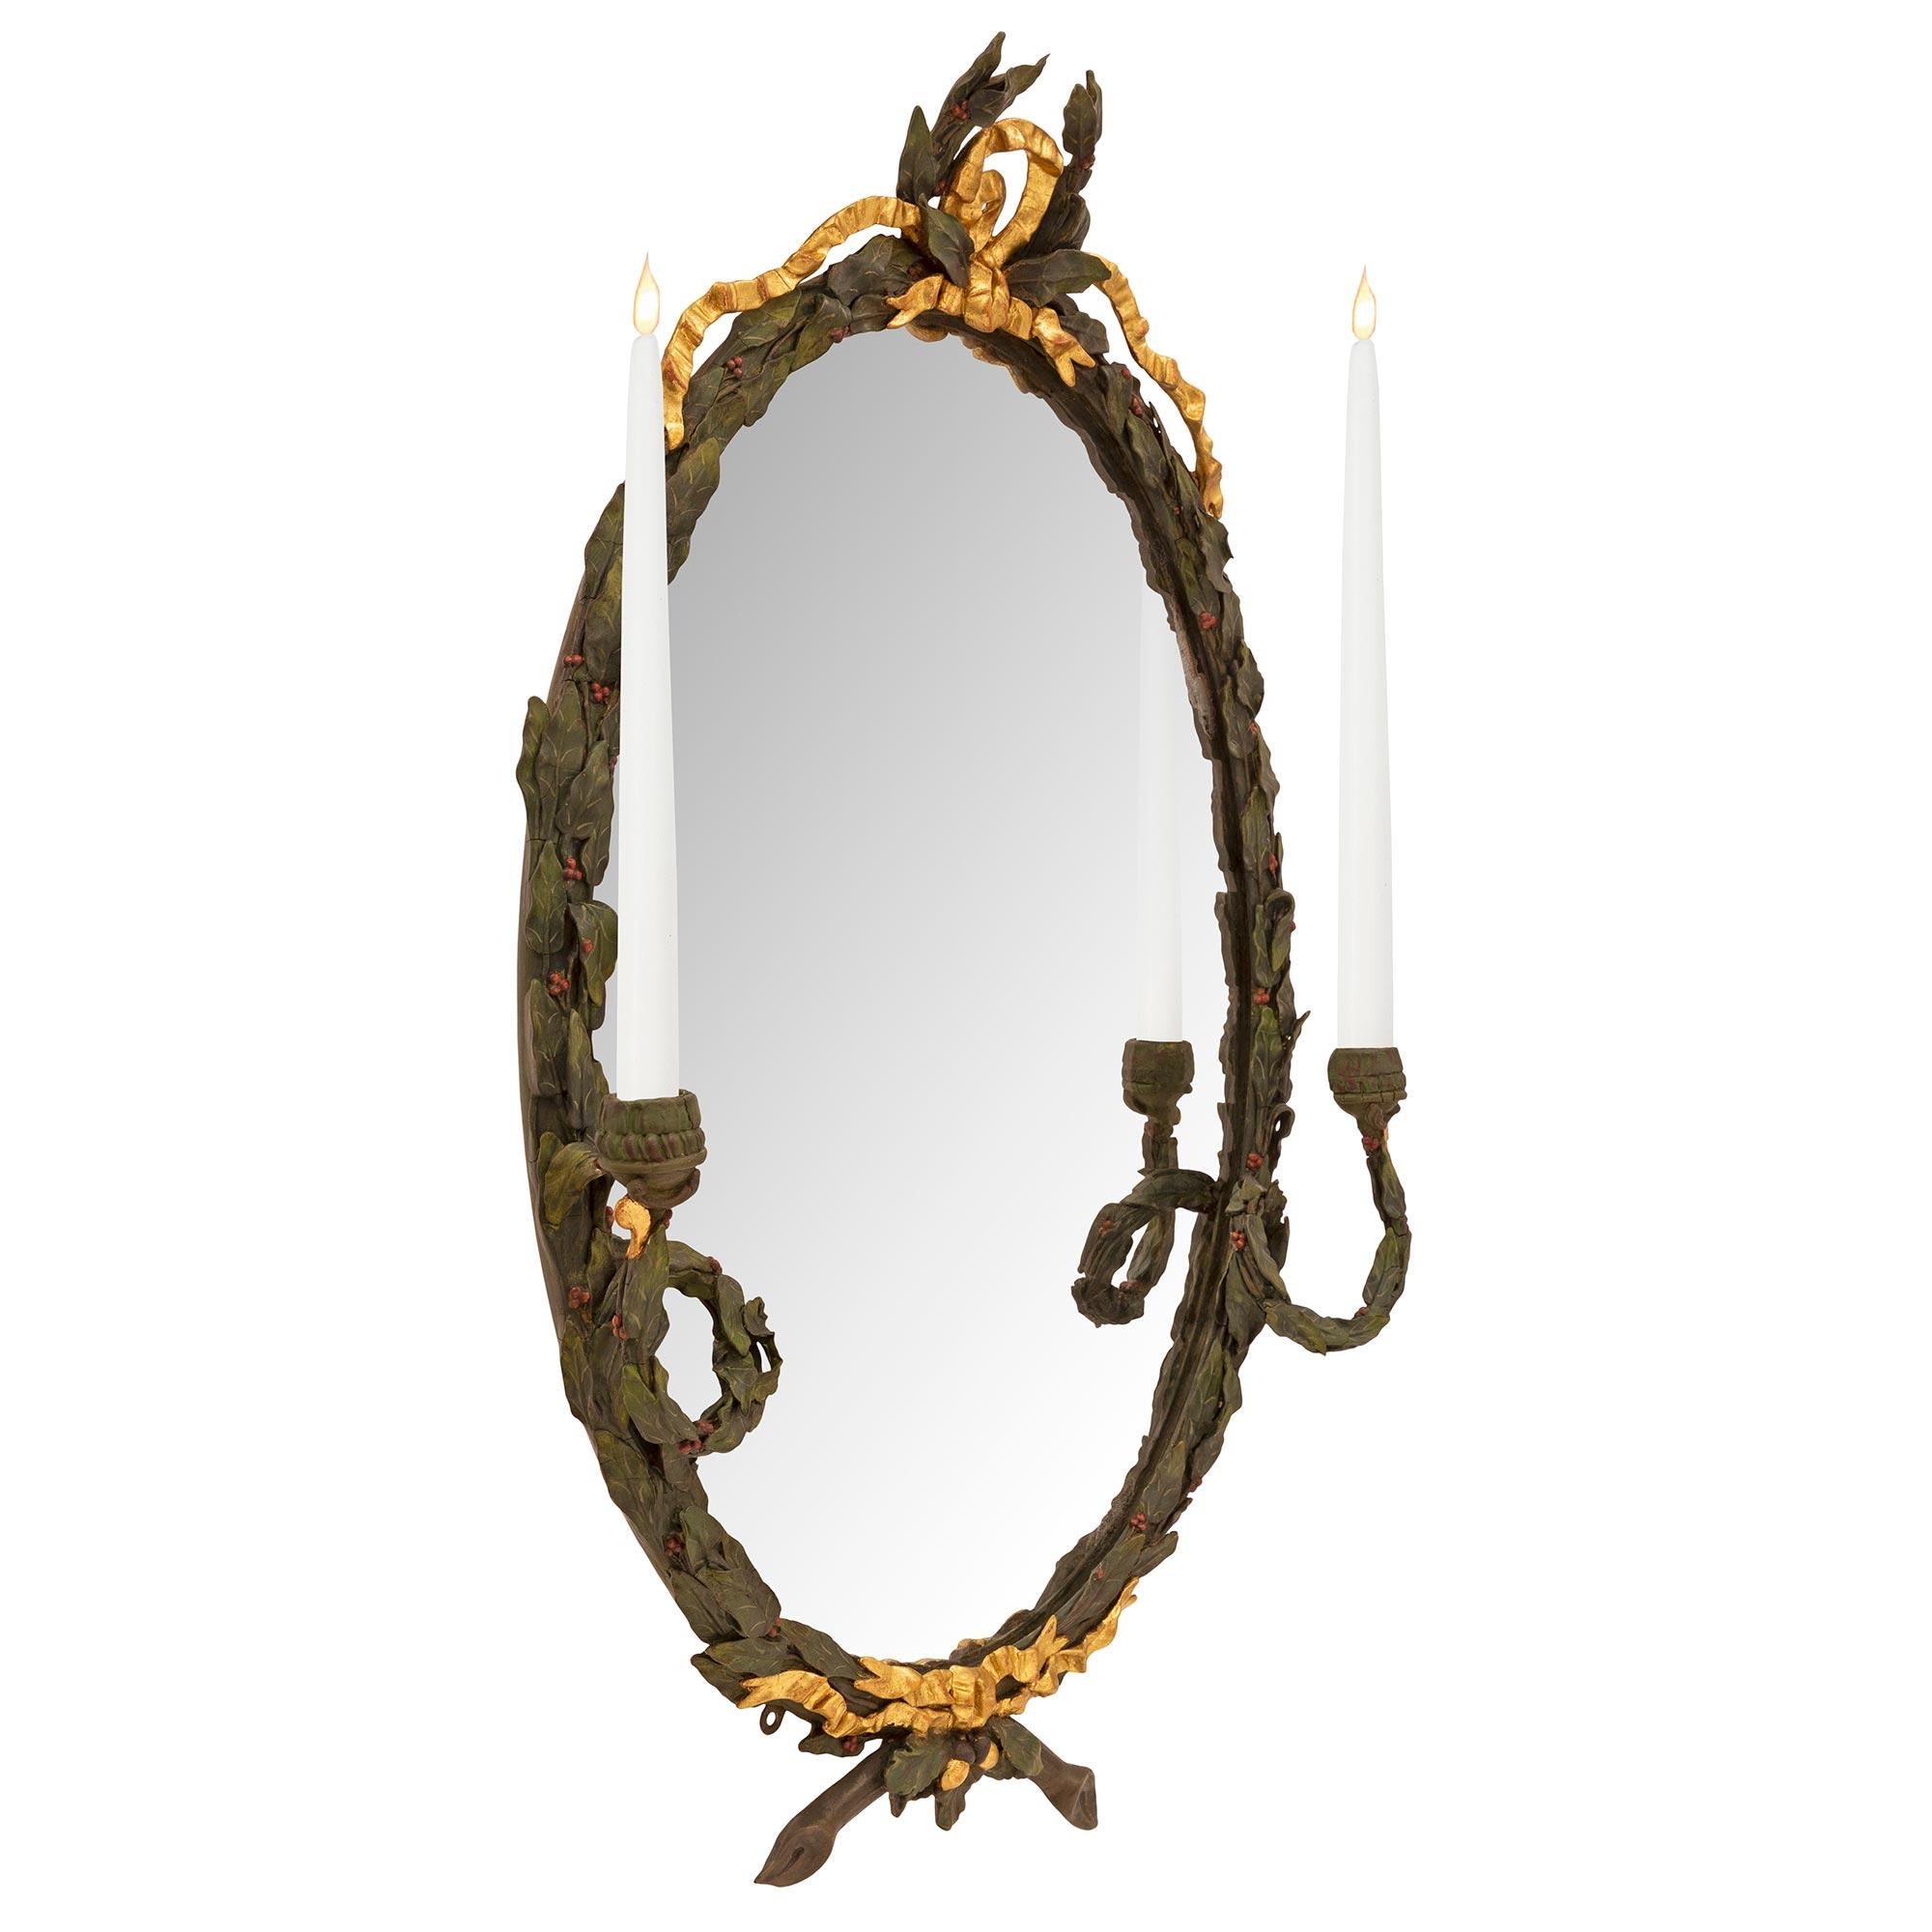 Une belle et très décorative paire de miroirs/concessions en bois patiné et bois doré de style Louis XVI du 19ème siècle. Chaque miroir conserve sa plaque d'origine dans un magnifique cadre en laurier baies patiné vert forêt richement sculpté avec